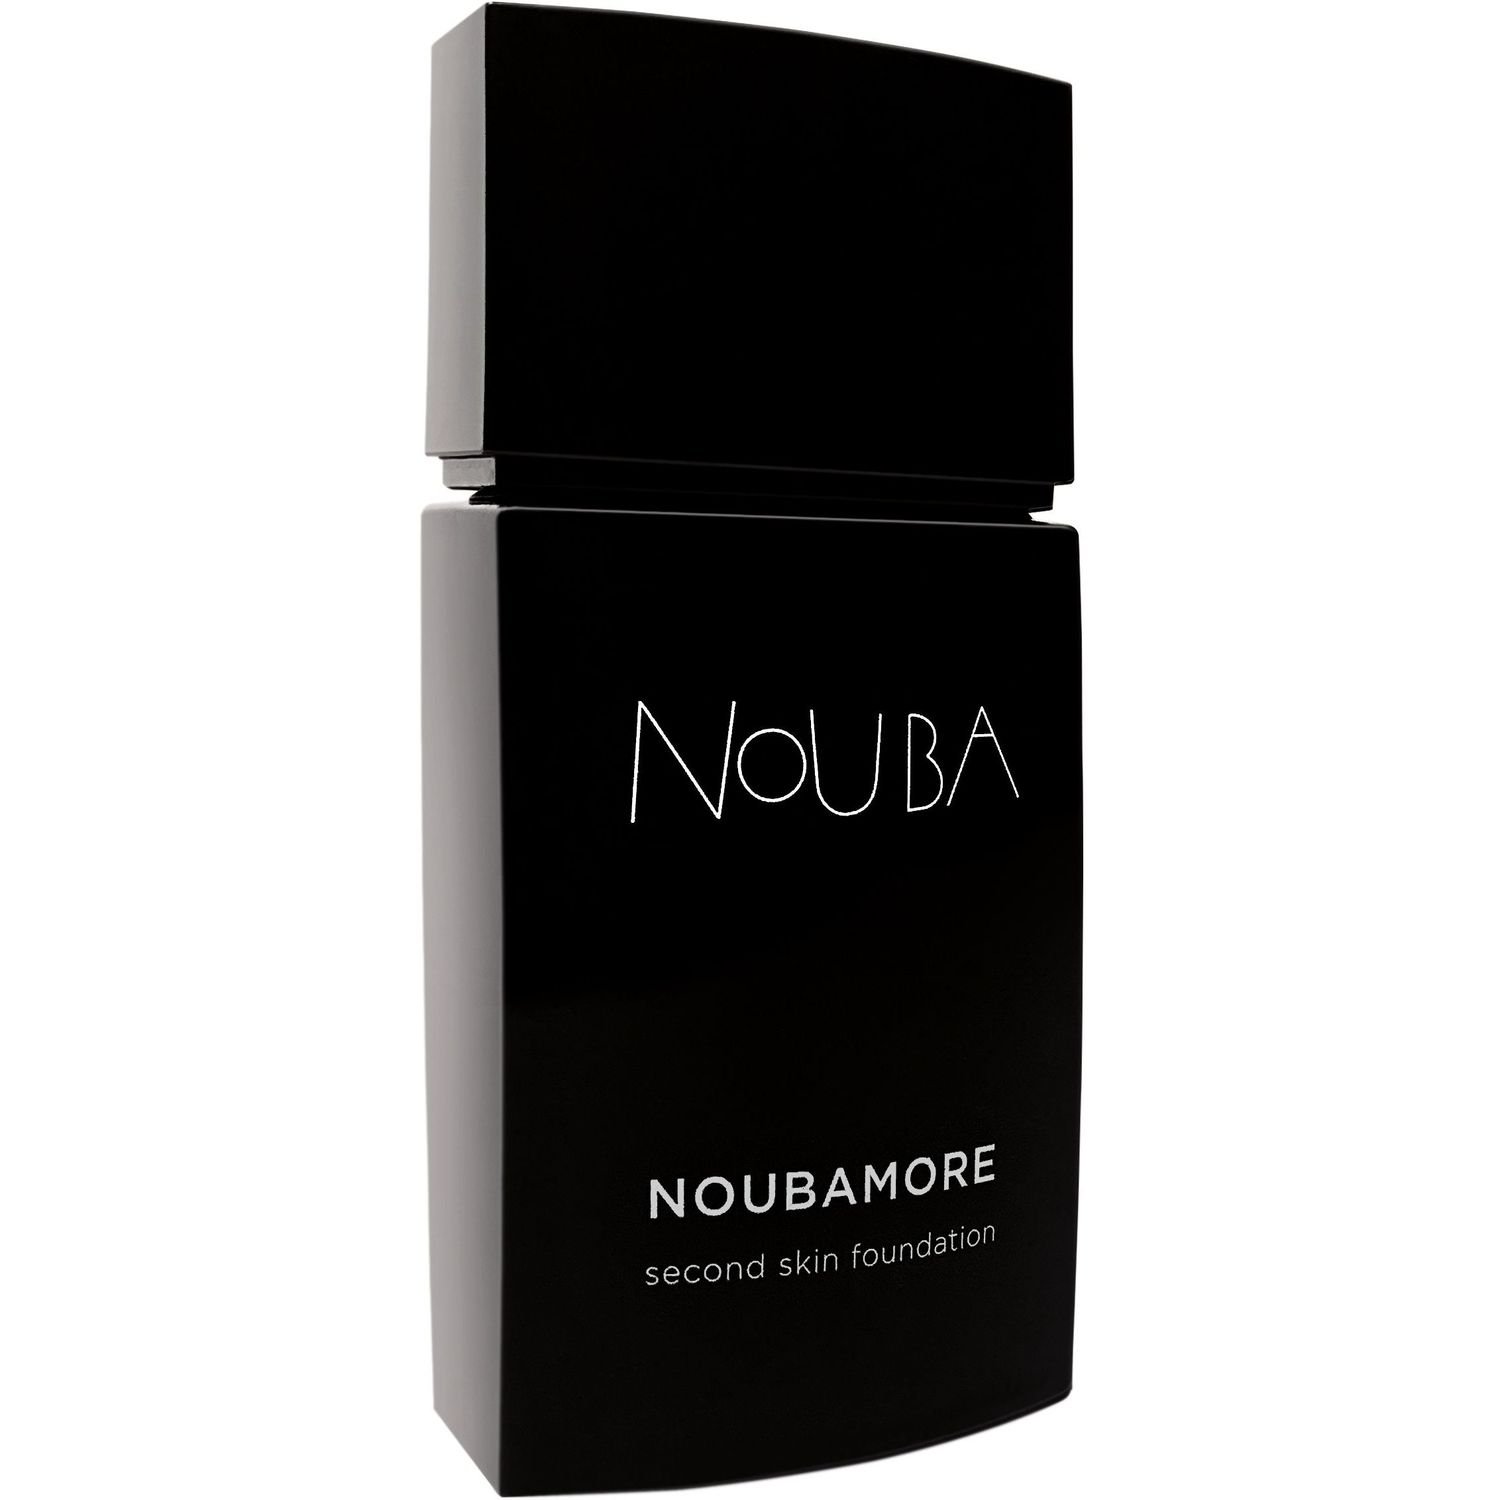 Тональная основа Nouba Noubamore Second Skin тон 88, 30 мл - фото 1